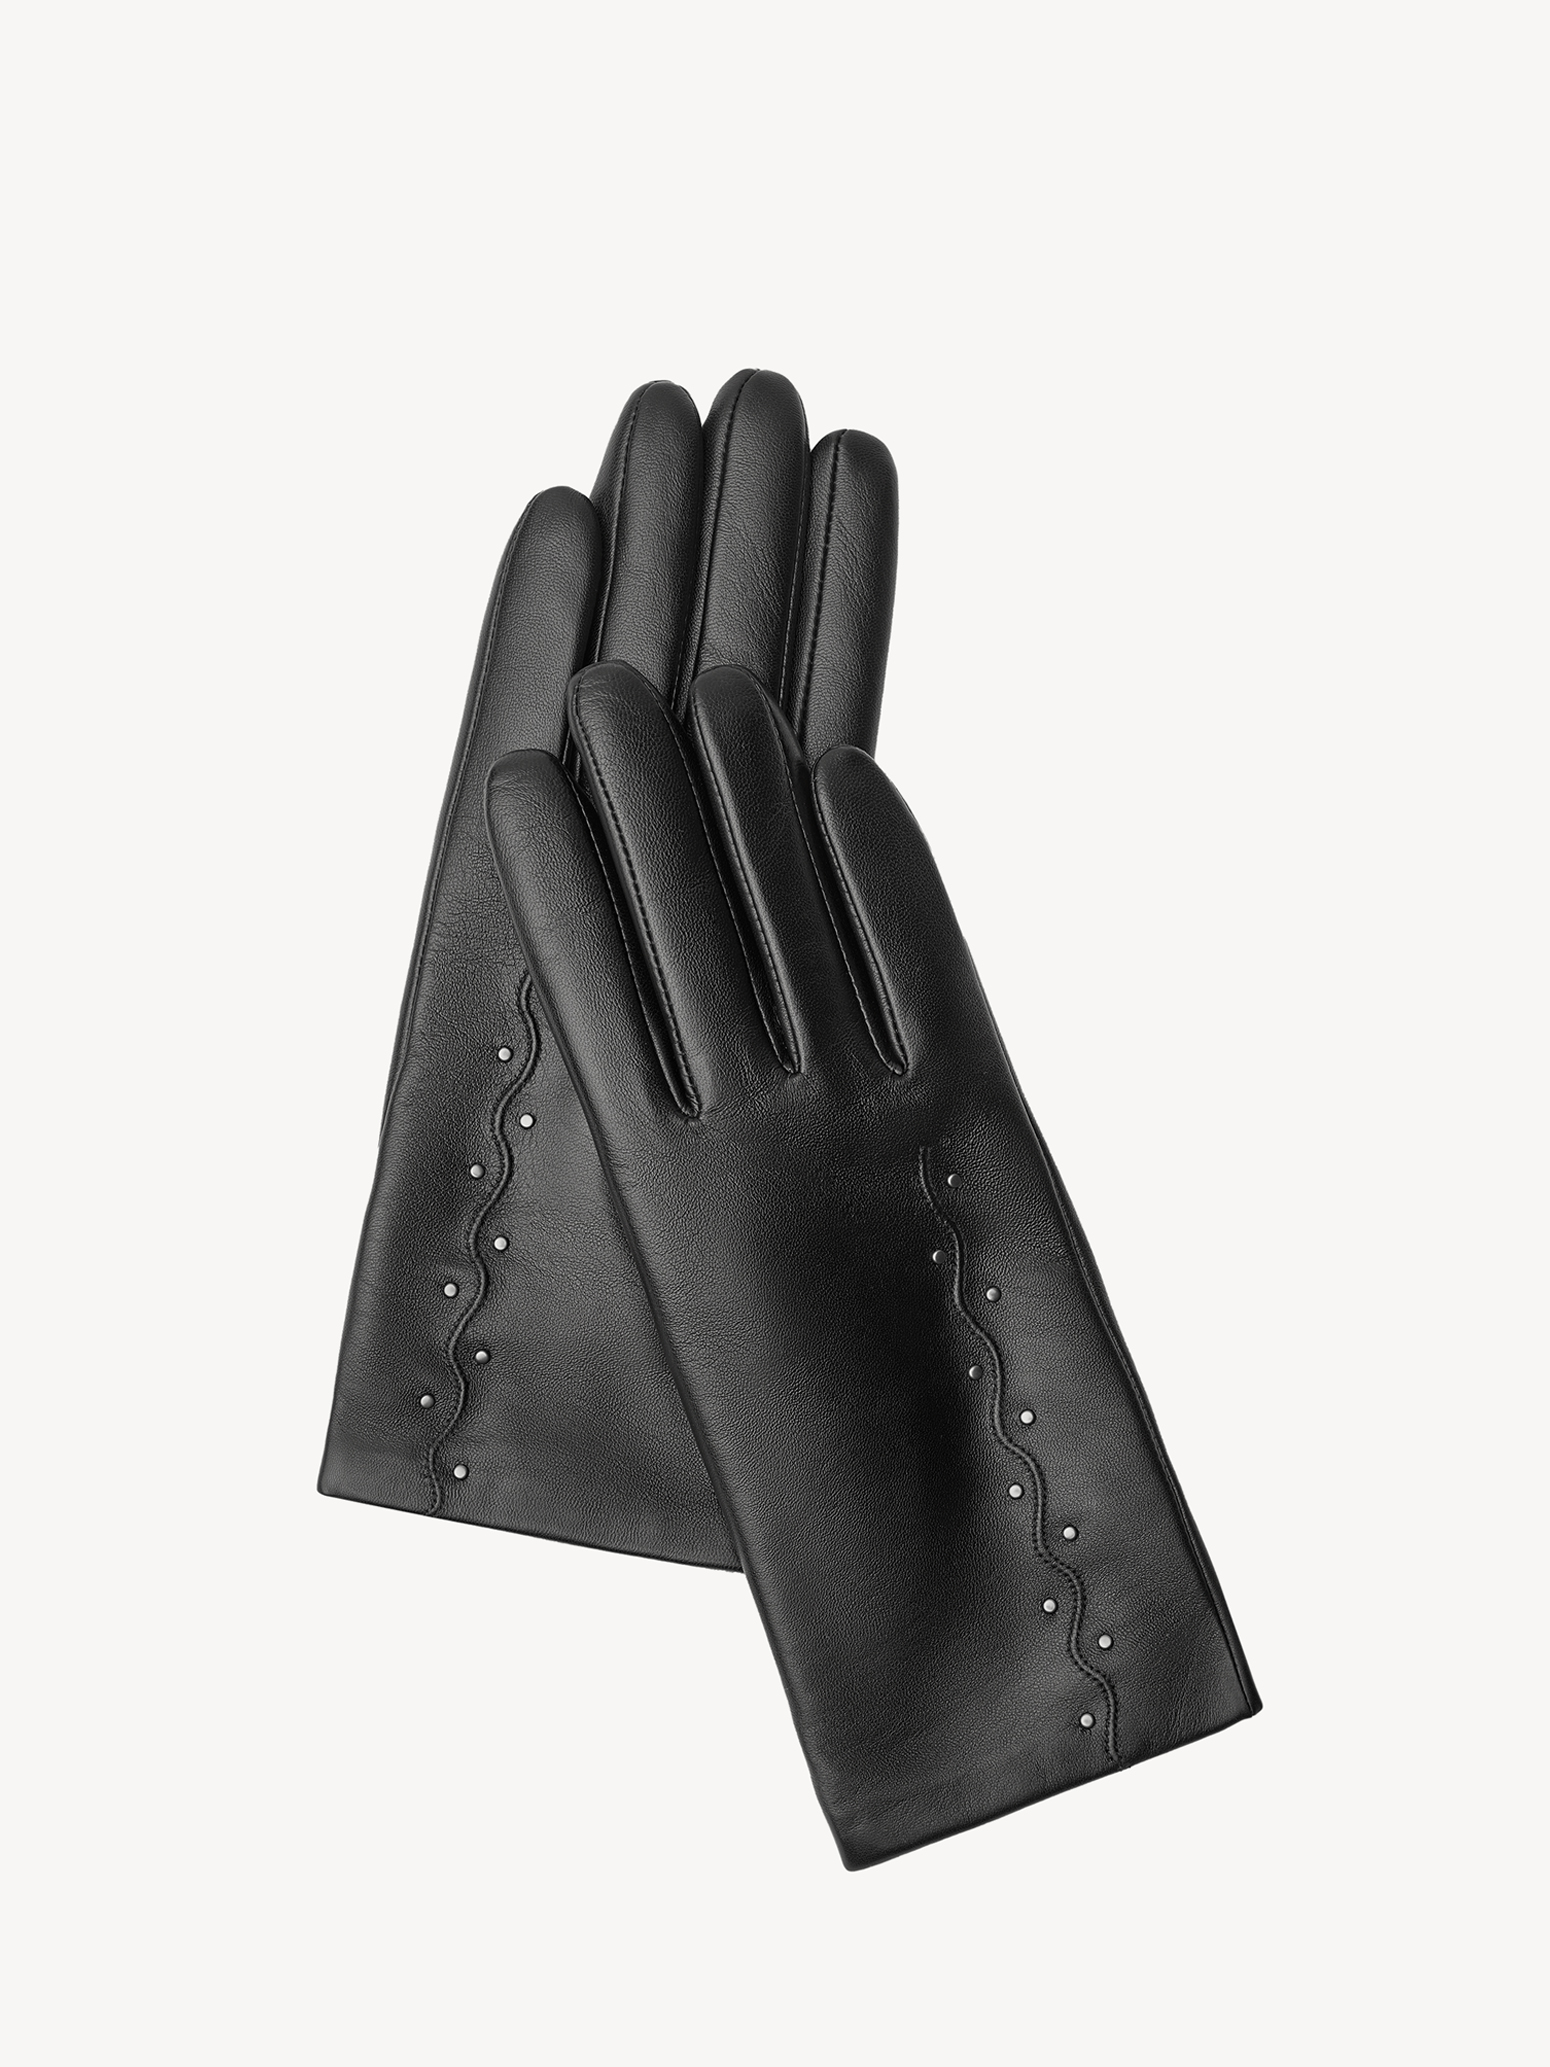 Перчатки женские Tamaris TM-0304-001 черный, р. 7.5